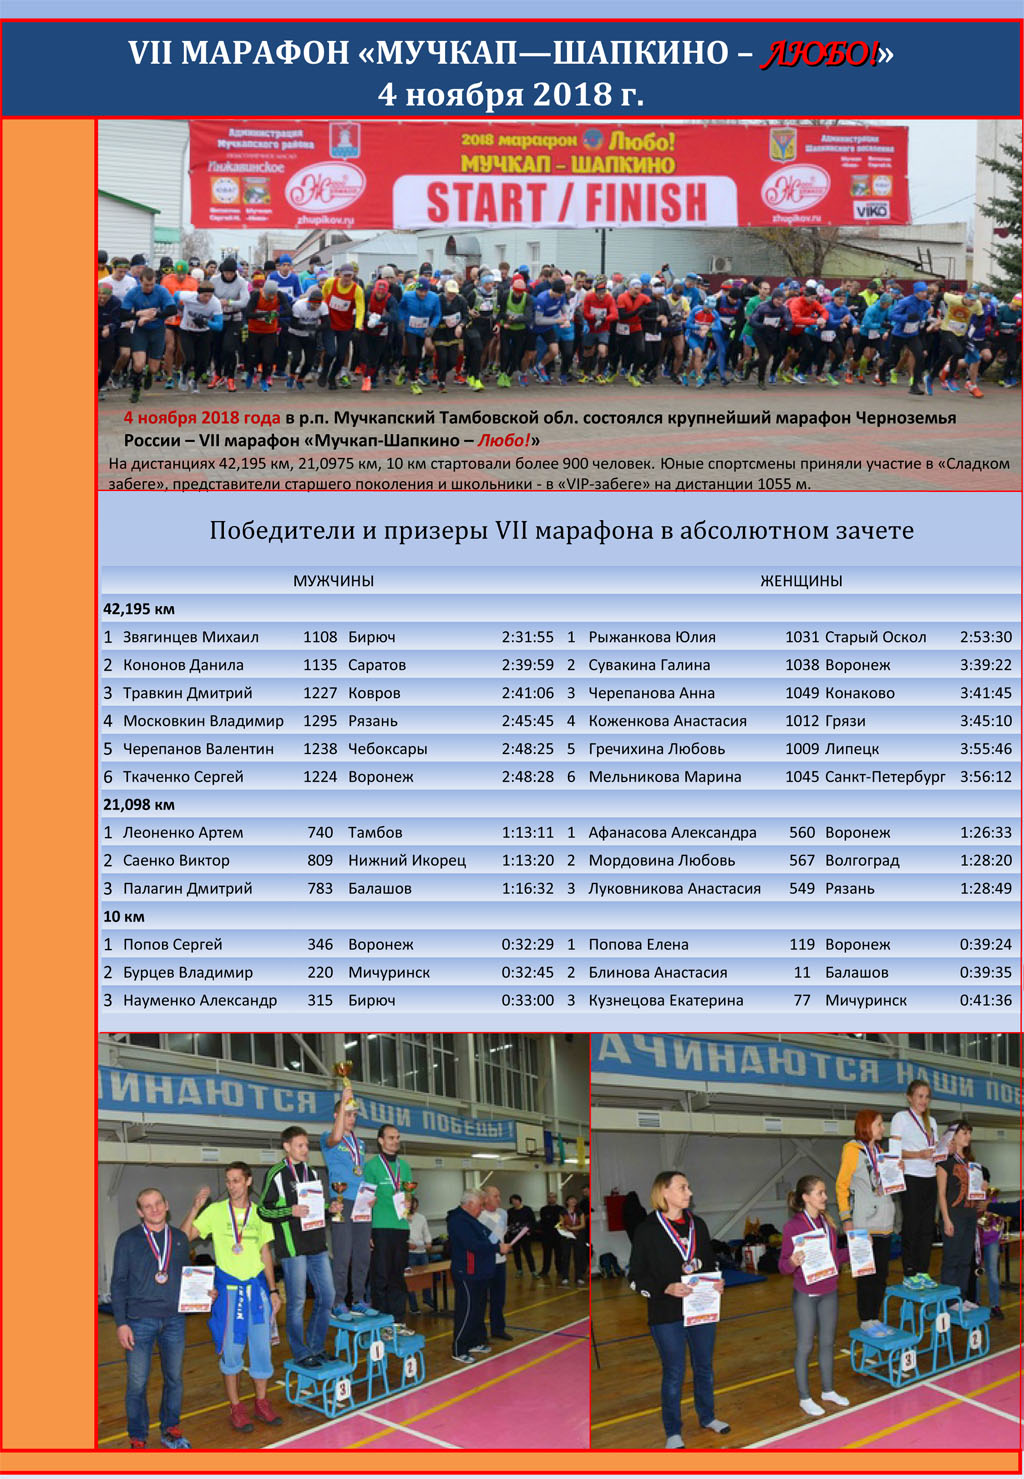 winners-7-marathon-Muchkap-Shapkino-Lubo-2018-ru-1